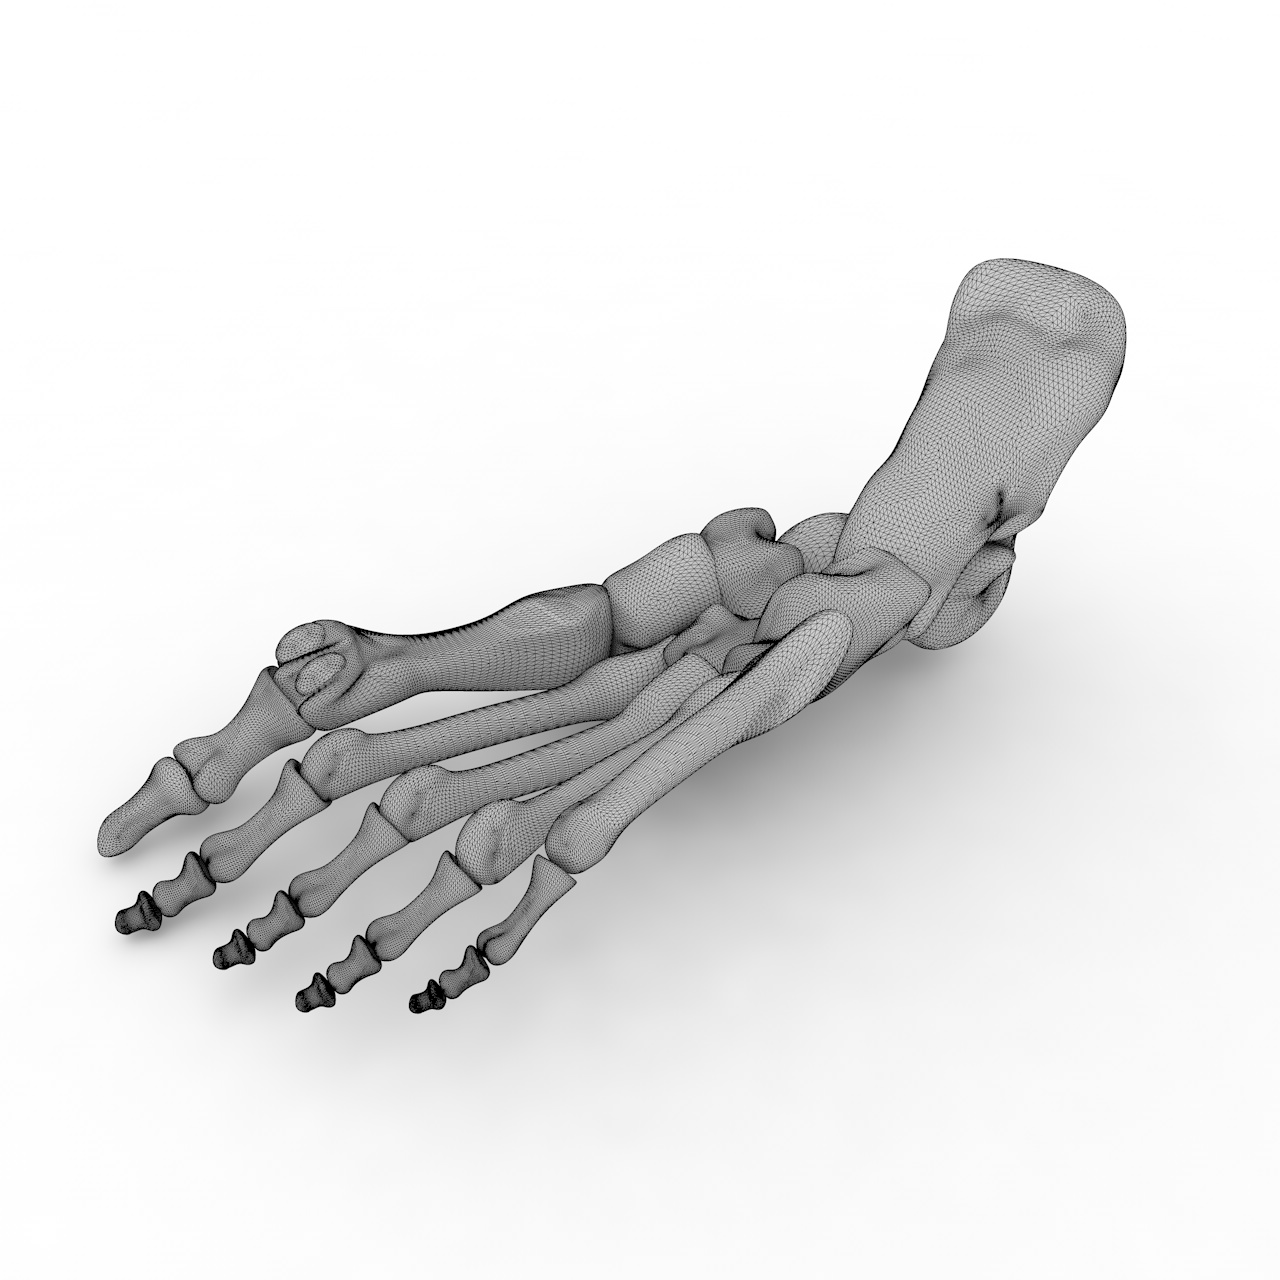 Esqueleto do pé humano modelo de impressão 3d